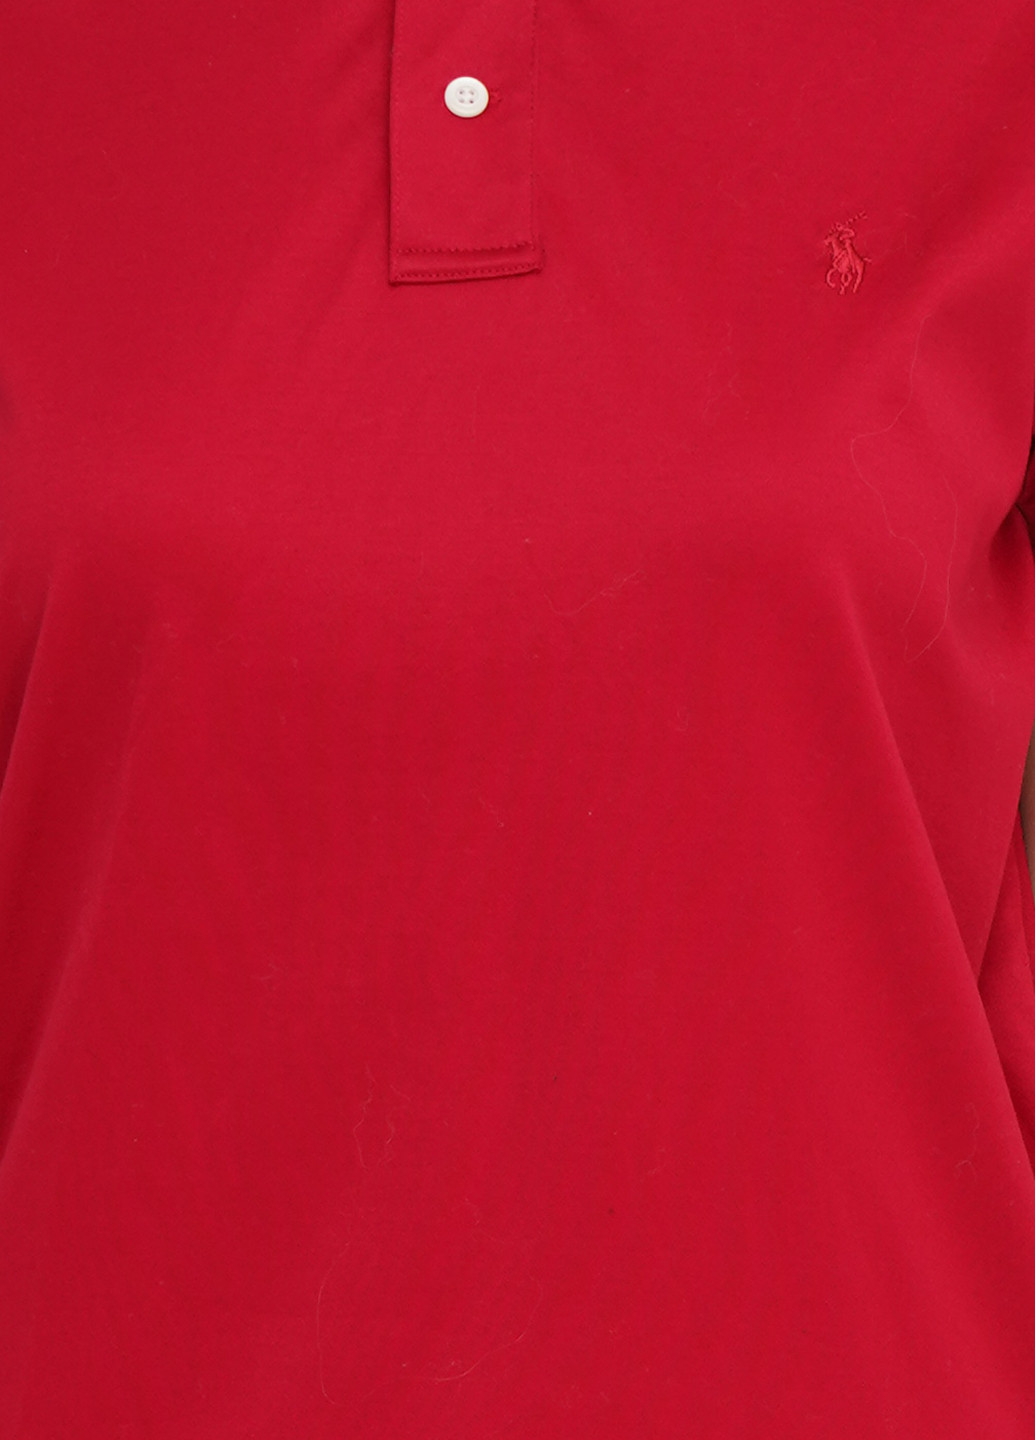 Бордовая женская футболка-поло Ralph Lauren однотонная